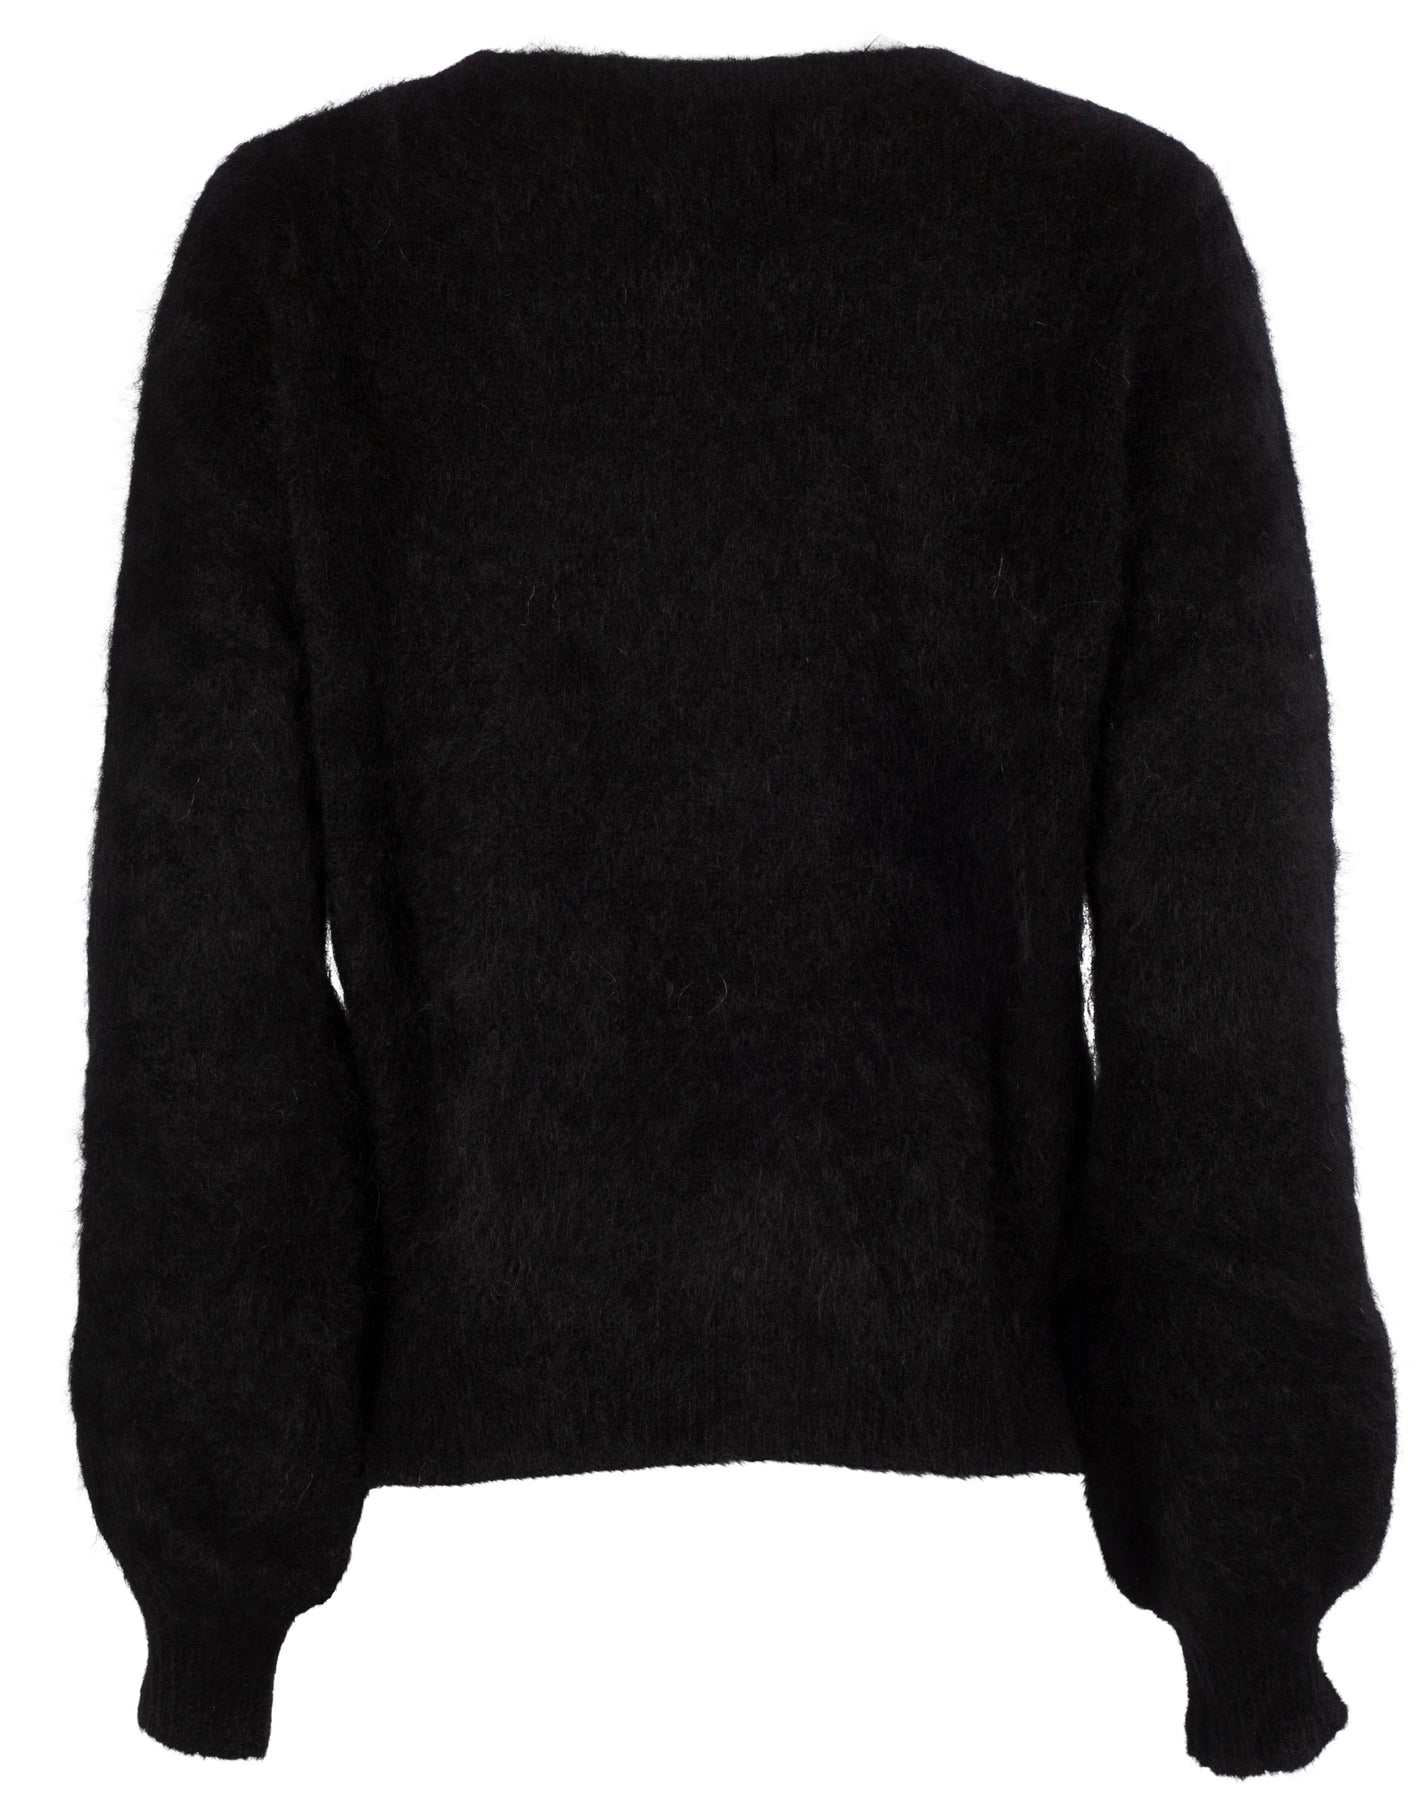 Mirabella Mohair Sweater - Black - Ella & il - Gensere - VILLOID.no